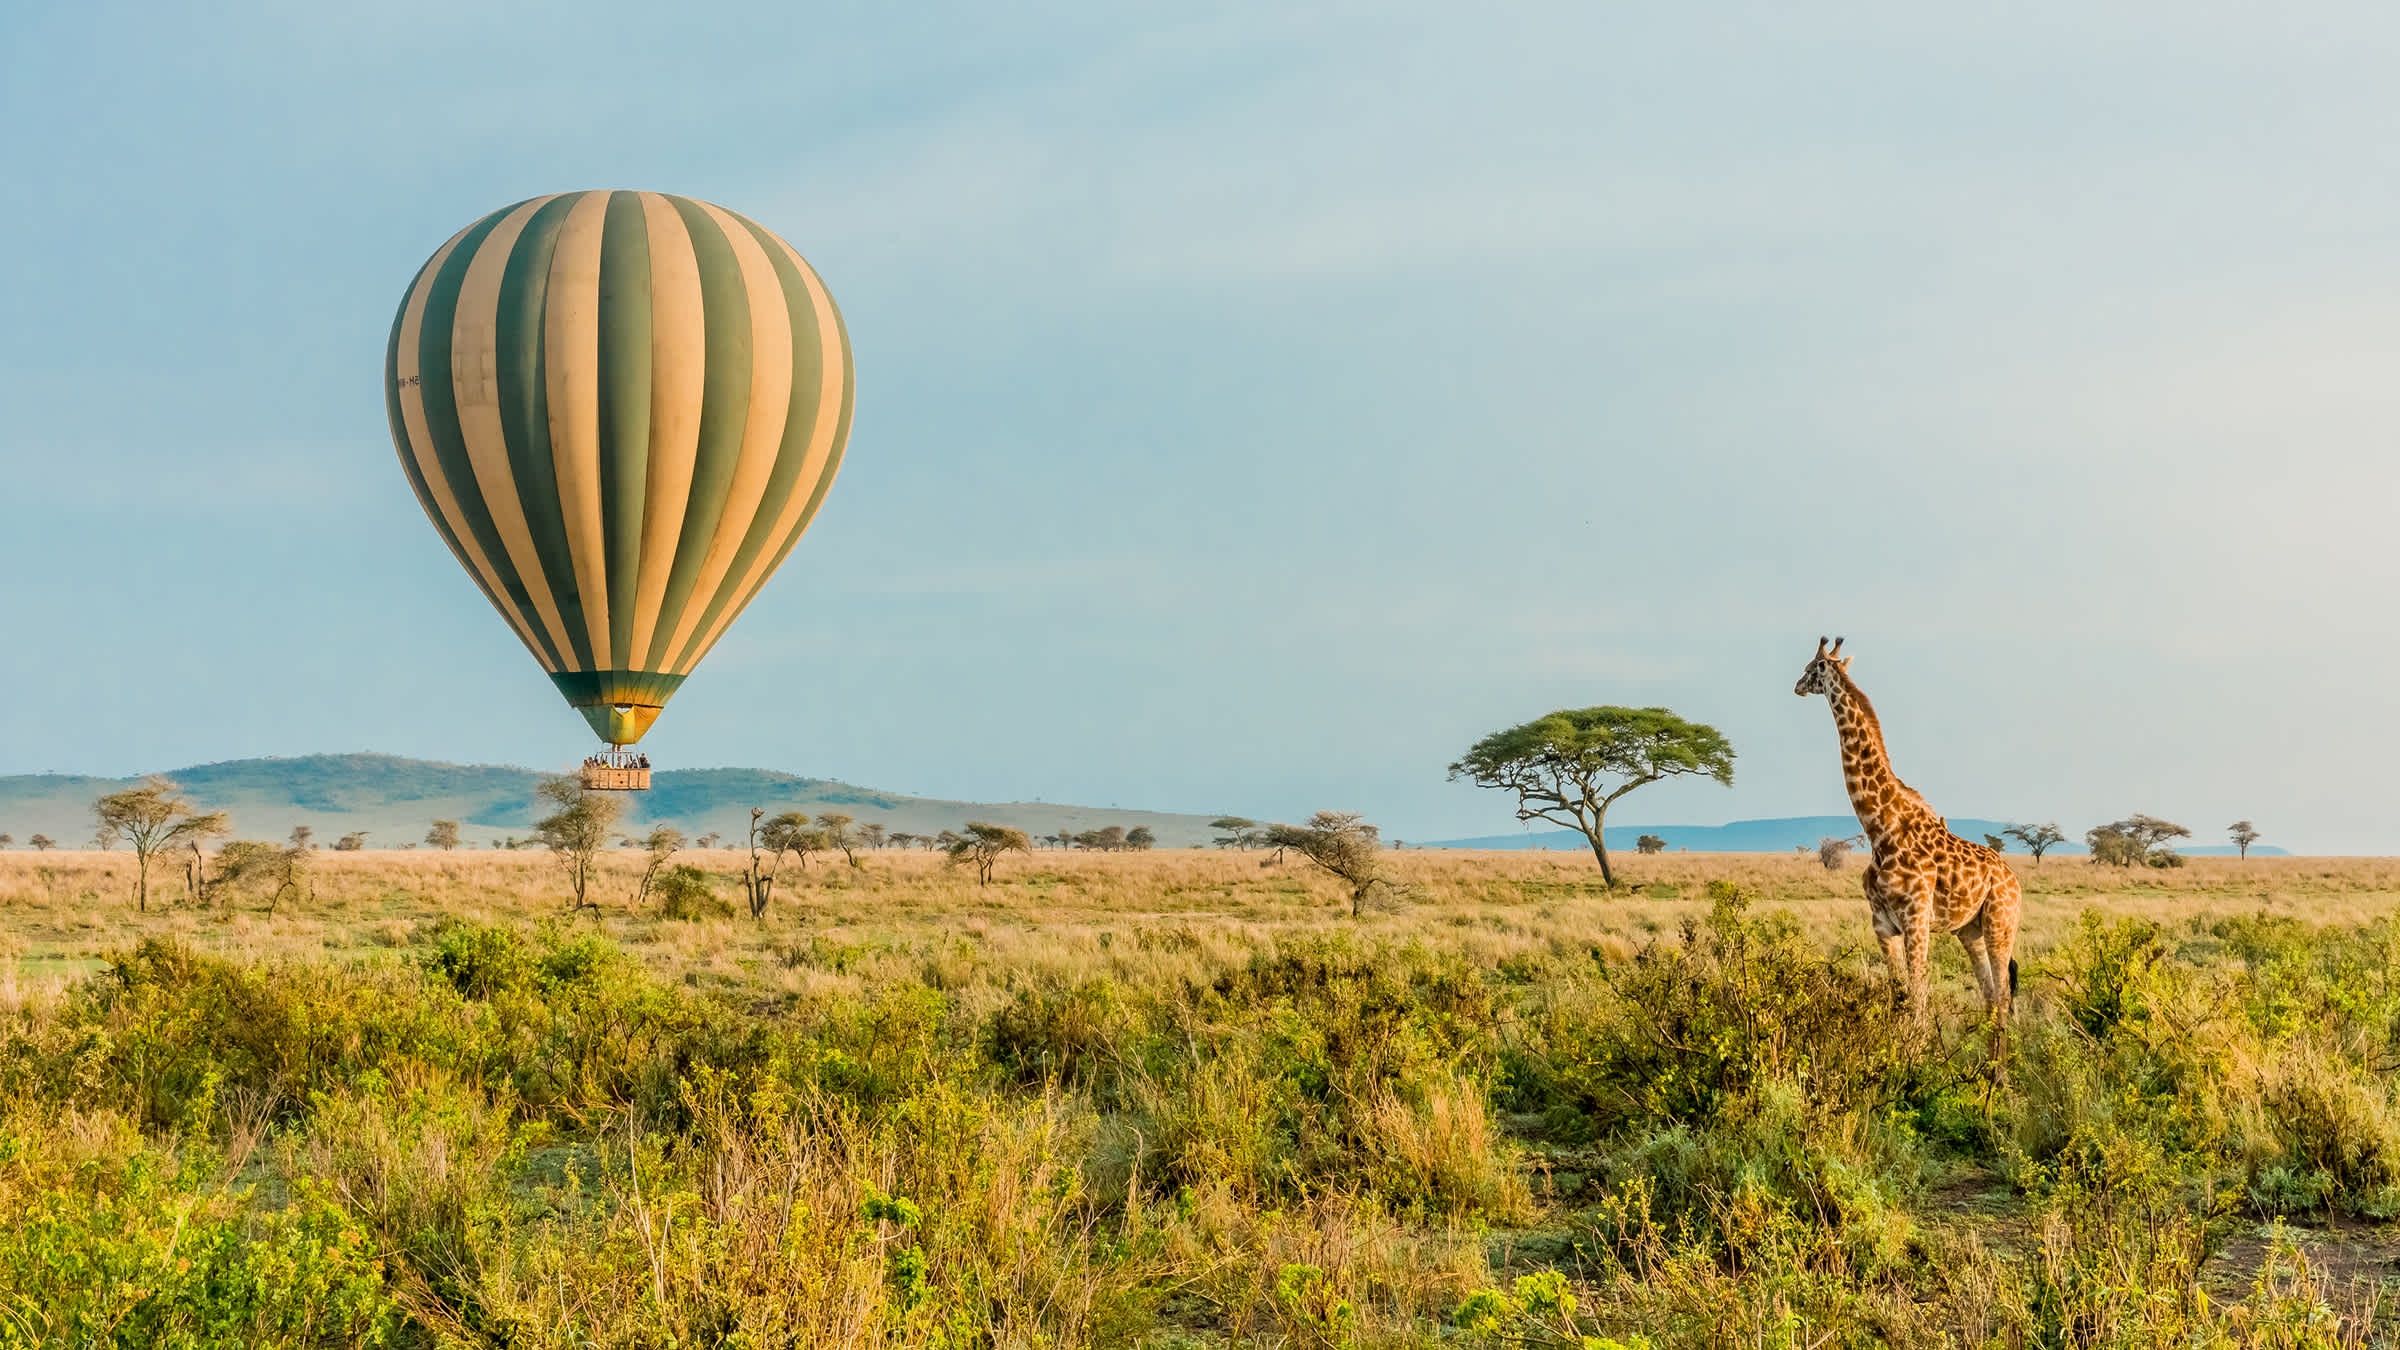 Survol d'un Parc National du Serengeti en montgolfière lors d'un safari en Tanzanie au cours duquel les voyageurs pourront admirer une girafe dans son environnement naturel.